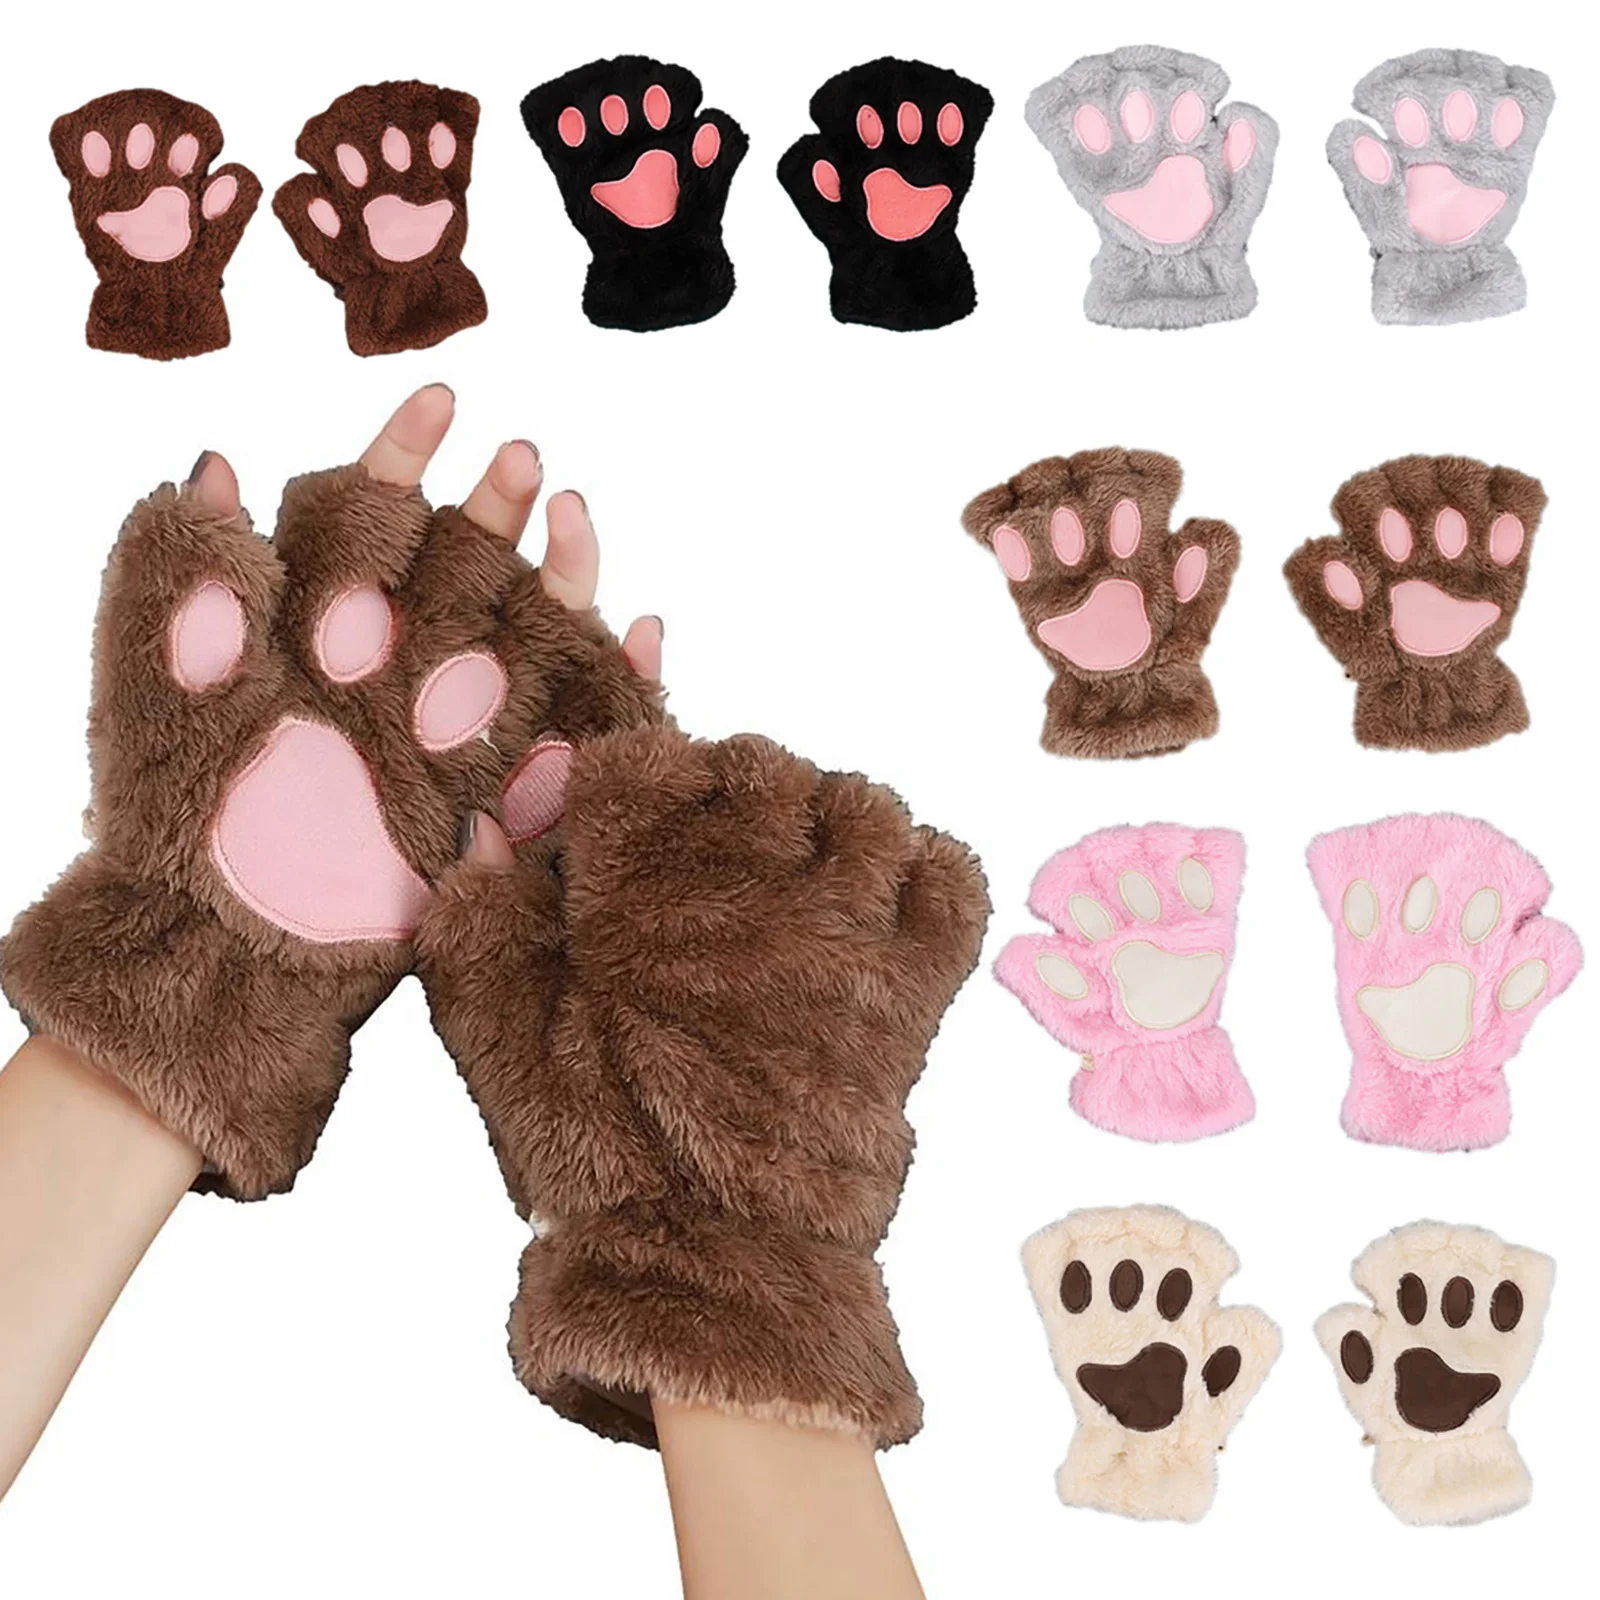 Winter Women Lovers Cute Cat Artiglio Paw Accogliente Gloves Short Fingerless Gloves Warm Half Finger Gloves